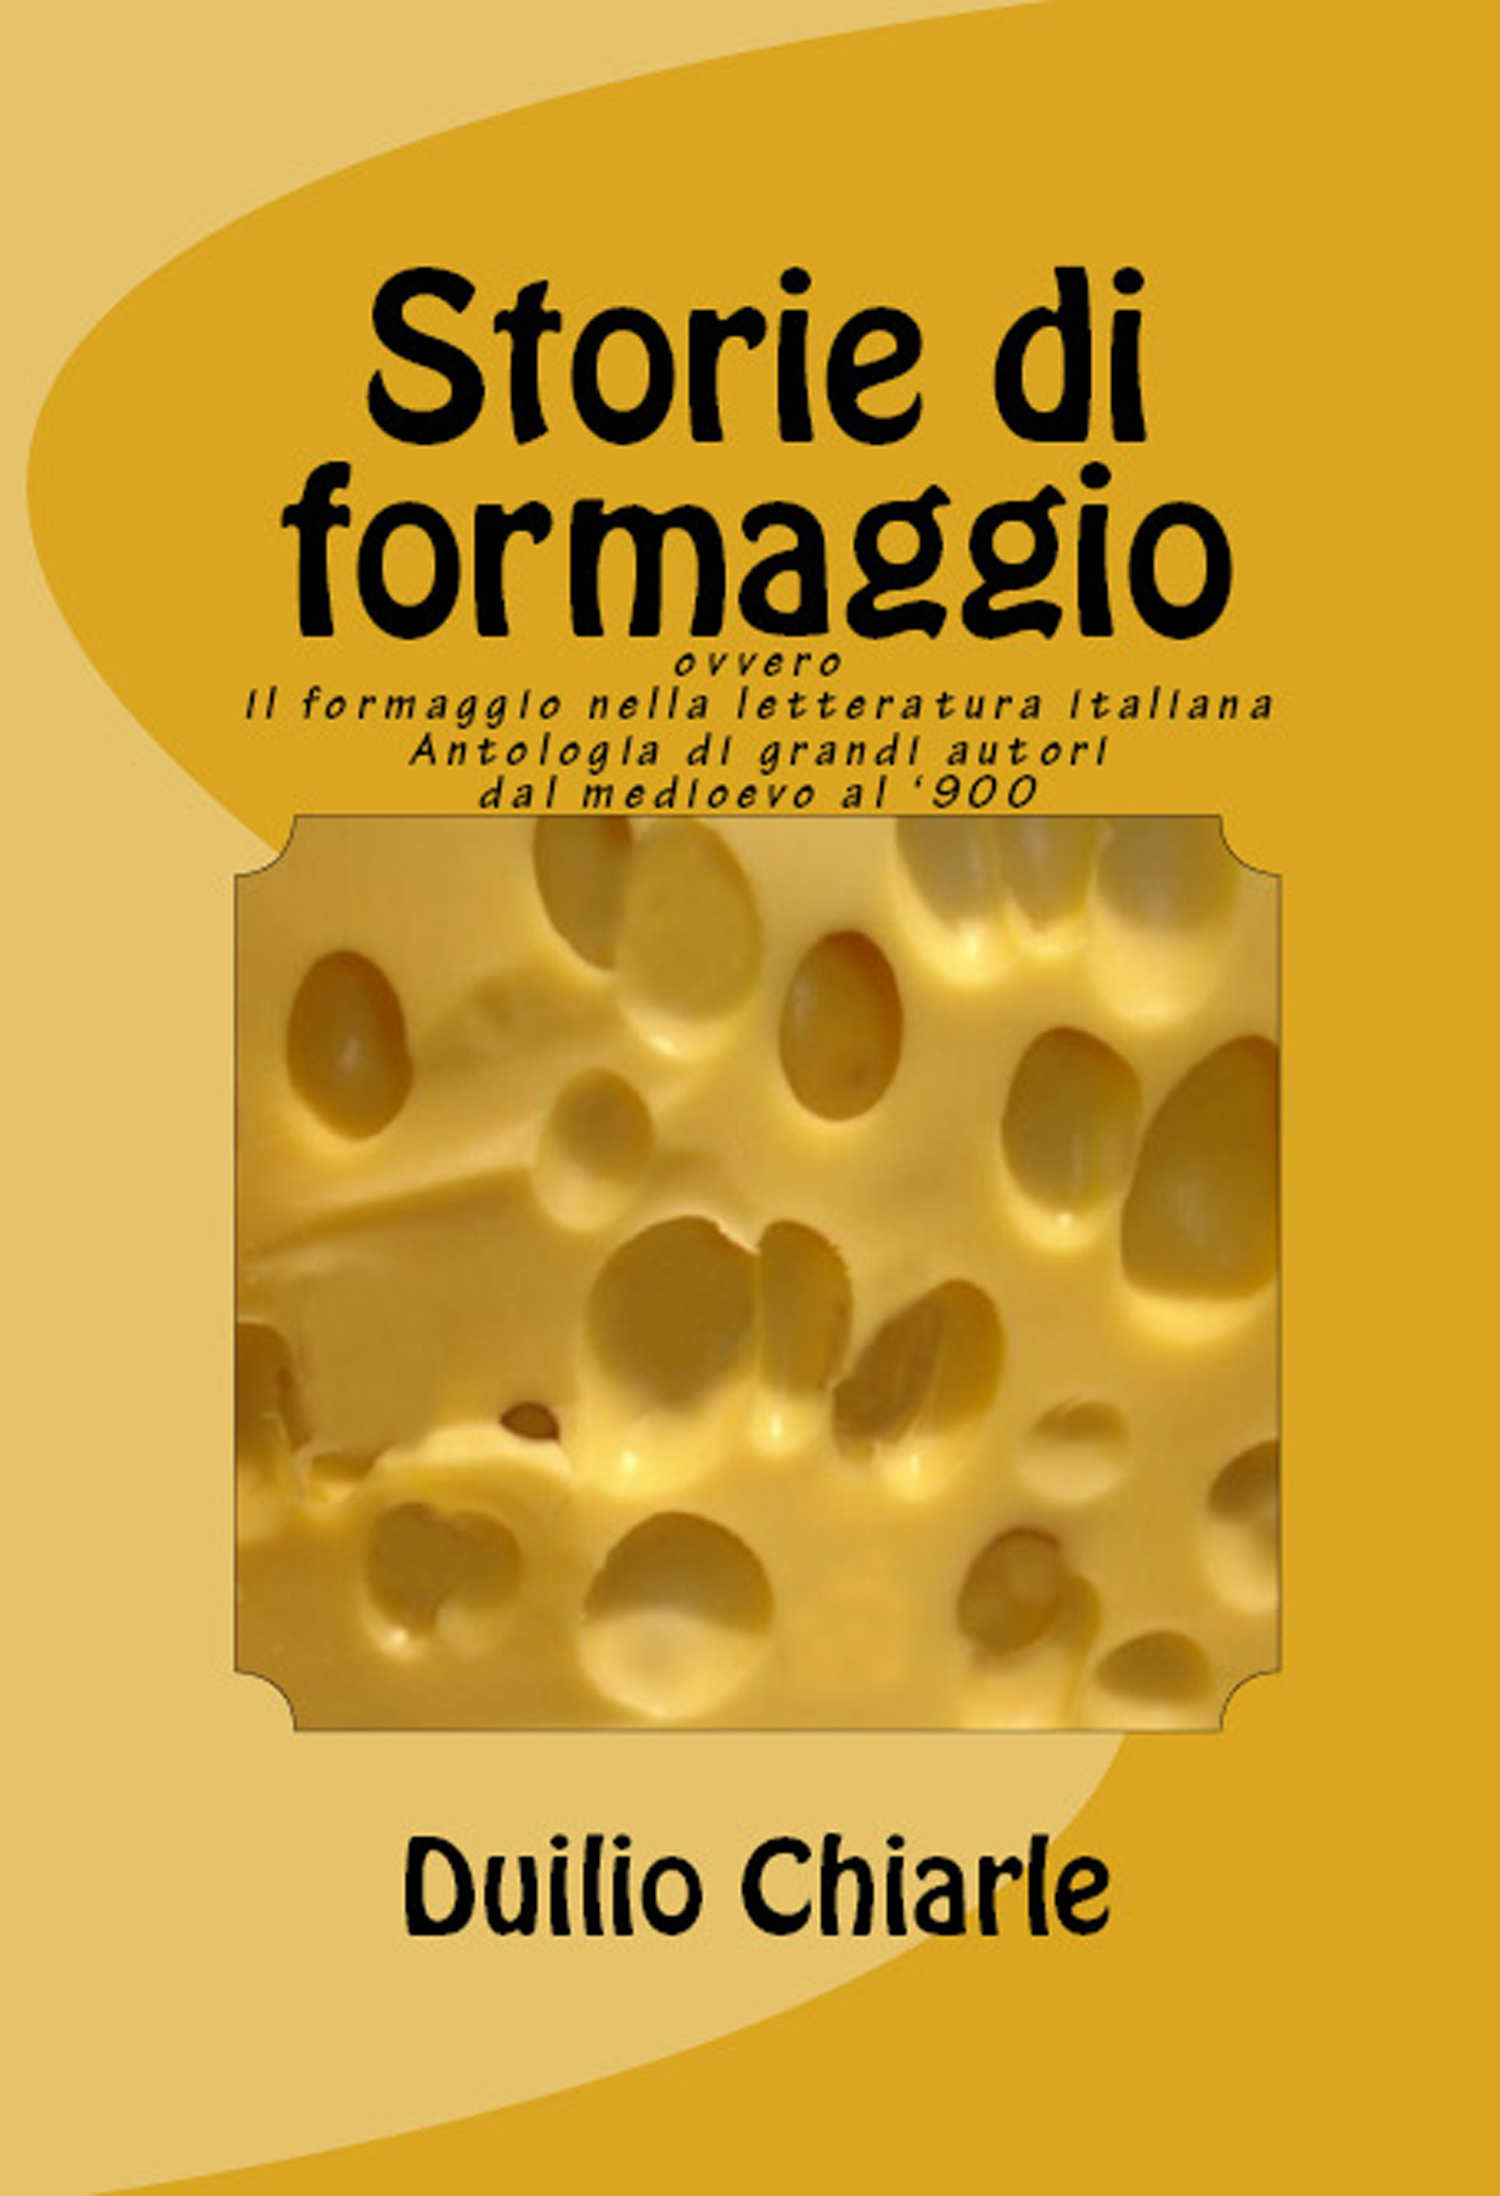 Storie di formaggio ovvero il formaggio nella letteratura italiana: Antologia di grandi autori dal medioevo al '900)